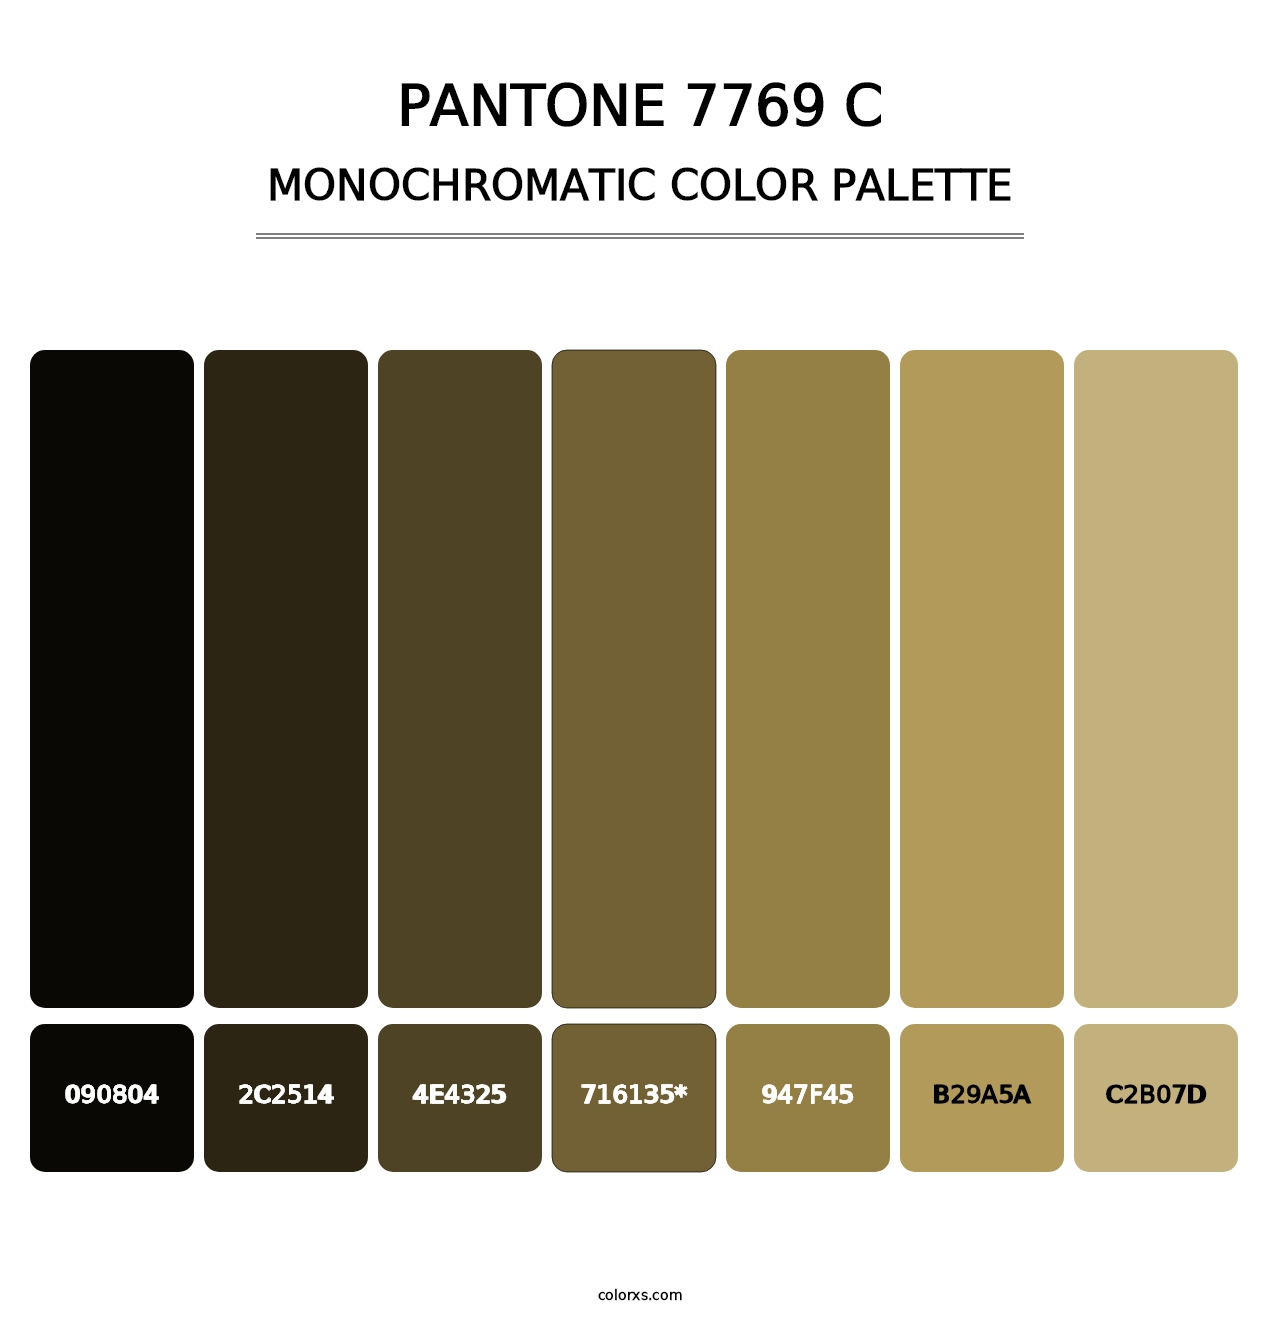 PANTONE 7769 C - Monochromatic Color Palette